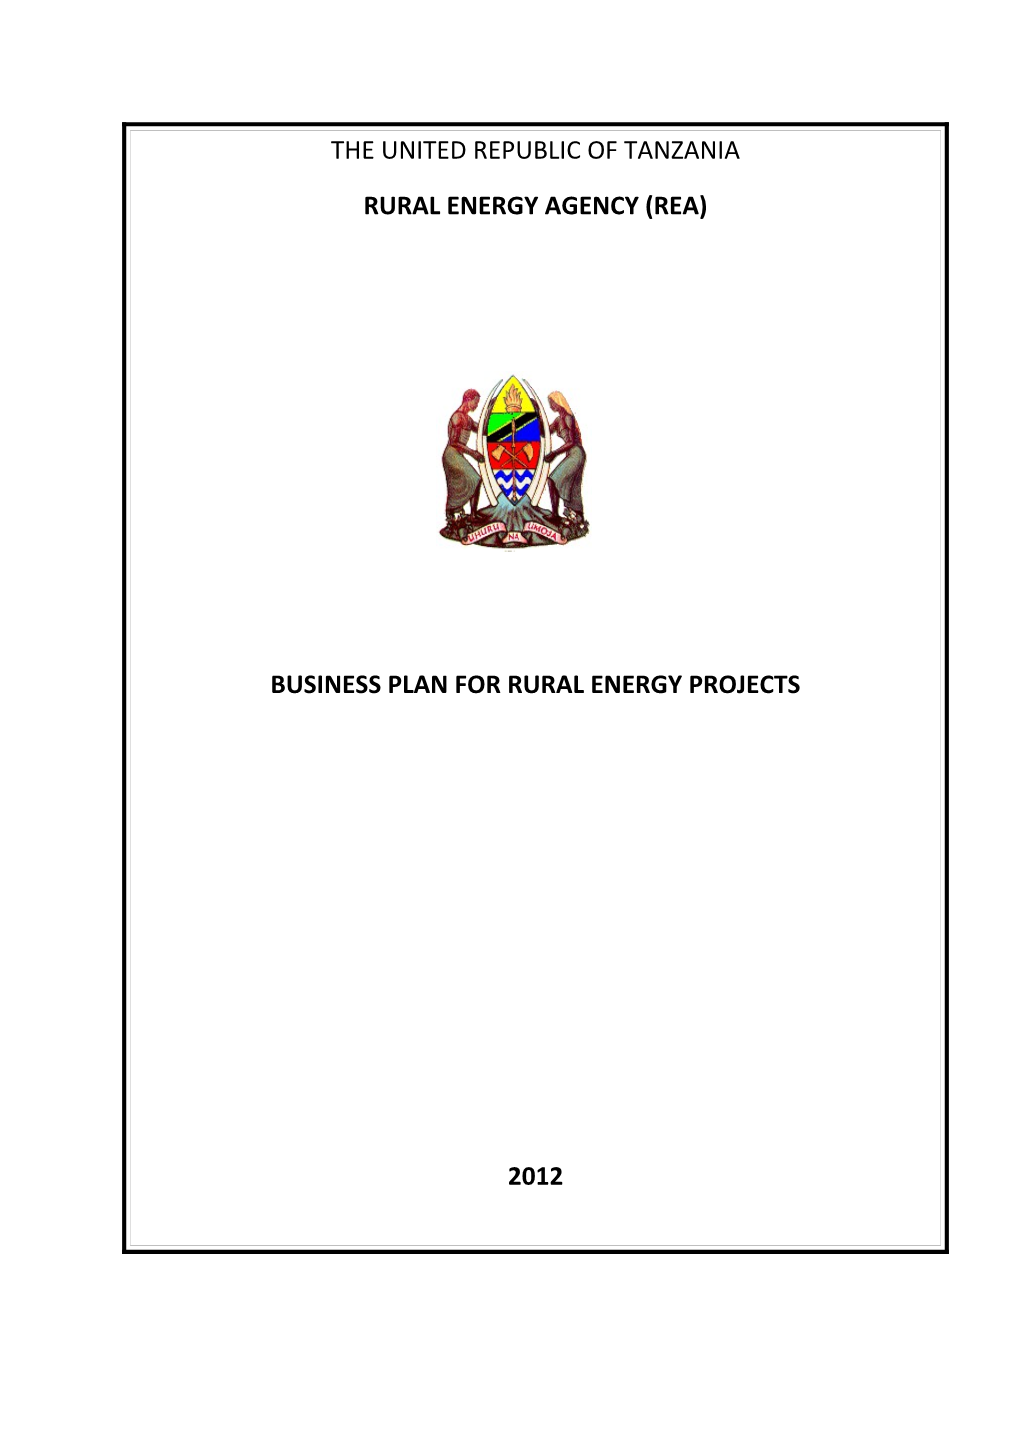 Rural Energy Agency (Rea)